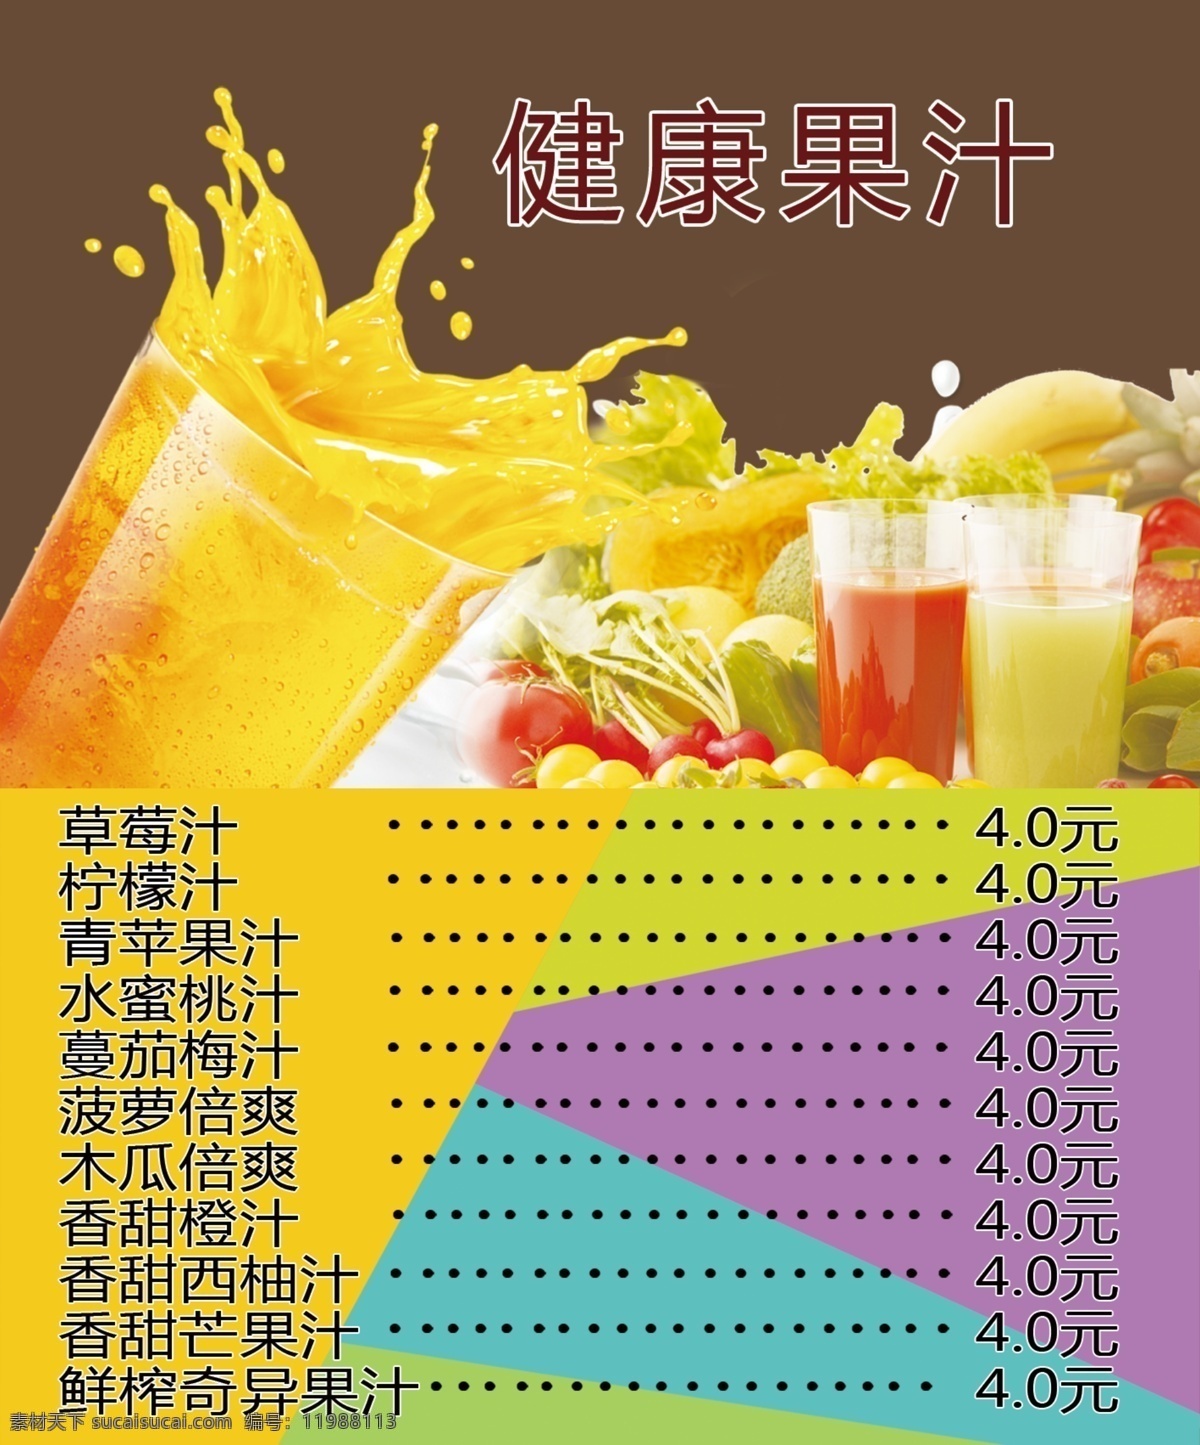 鲜榨果汁 果汁 果汁图片 果汁报价表 饮品图片 水果 饮料 展架 灯箱 展板模板 黄色